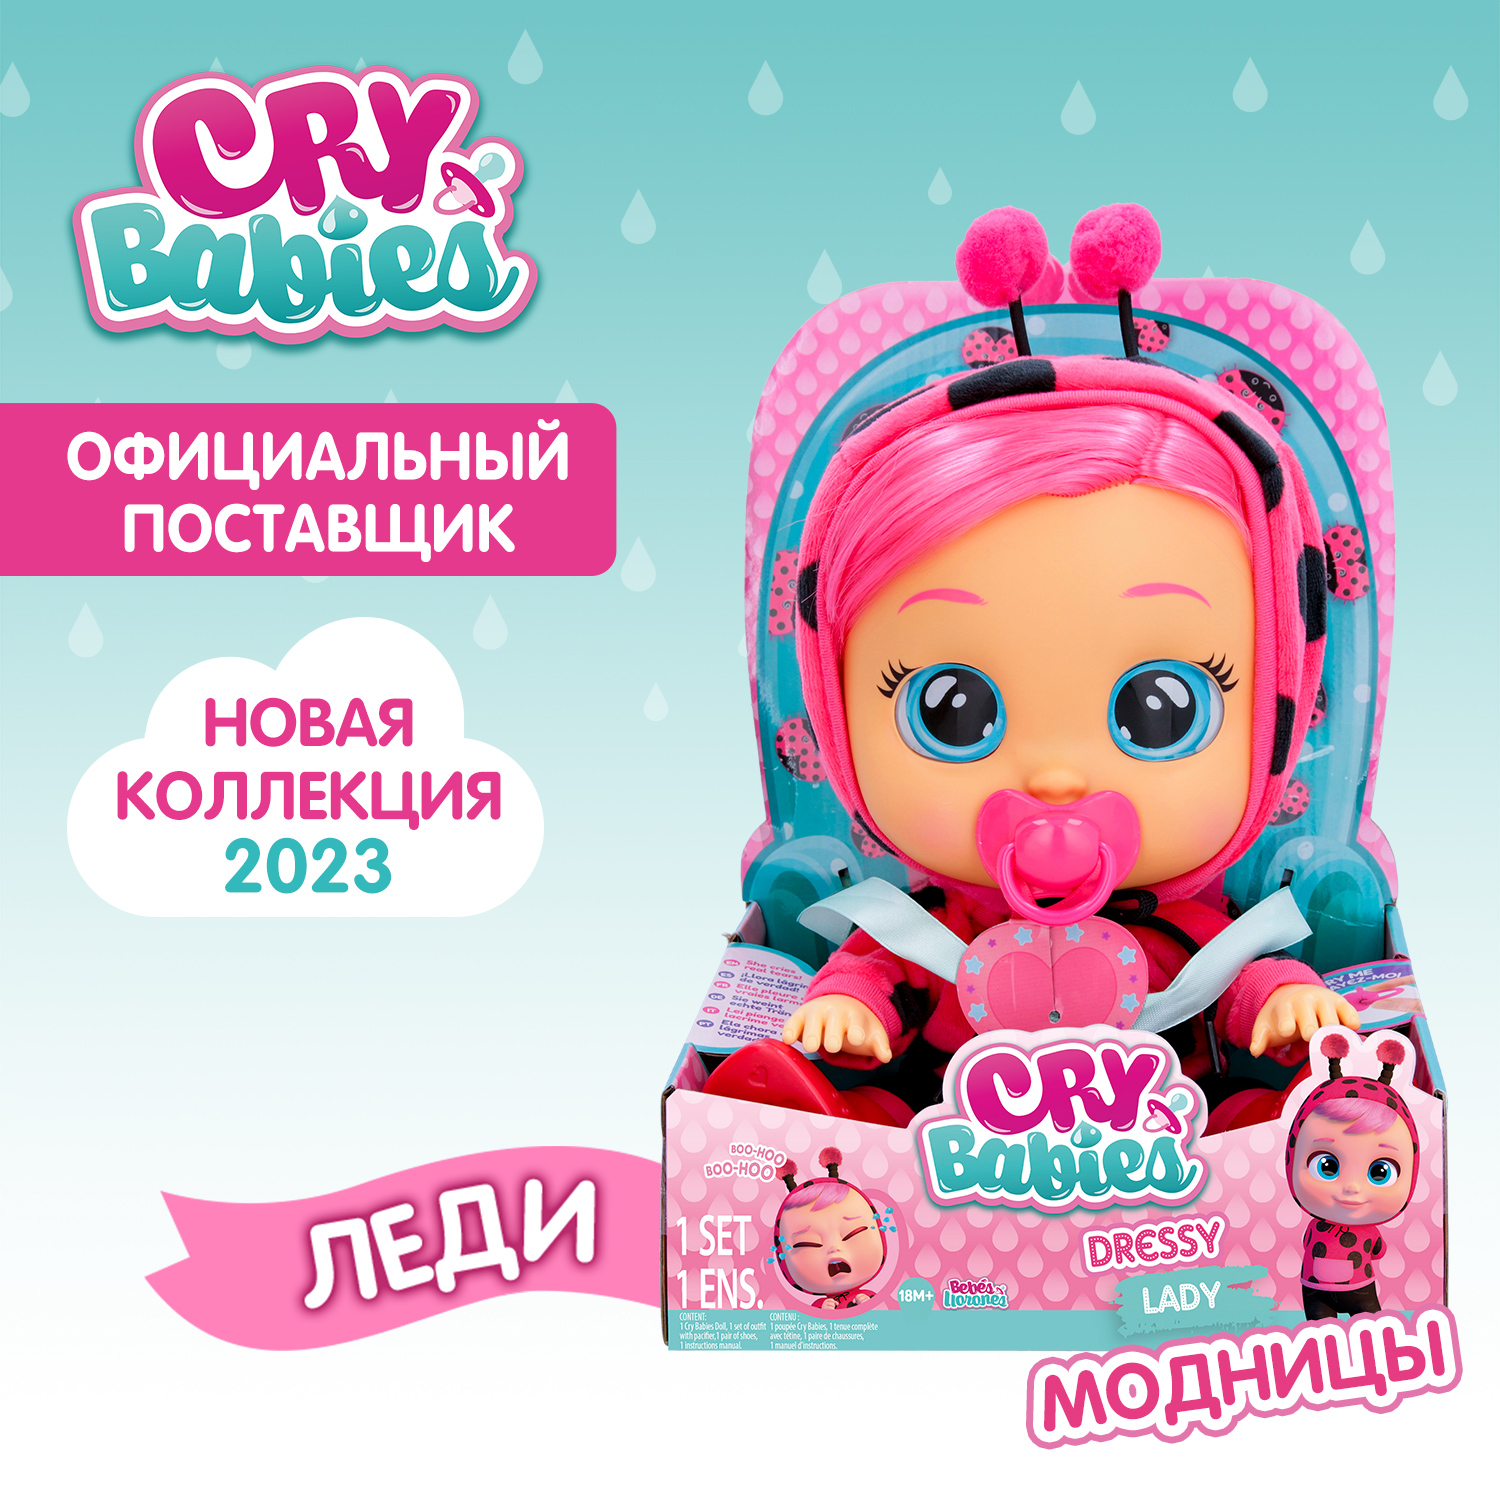 Кукла Cry Babies Леди Модница, интерактивная, плачущая, 40885 кукла интерактивная cry babies dressy леди